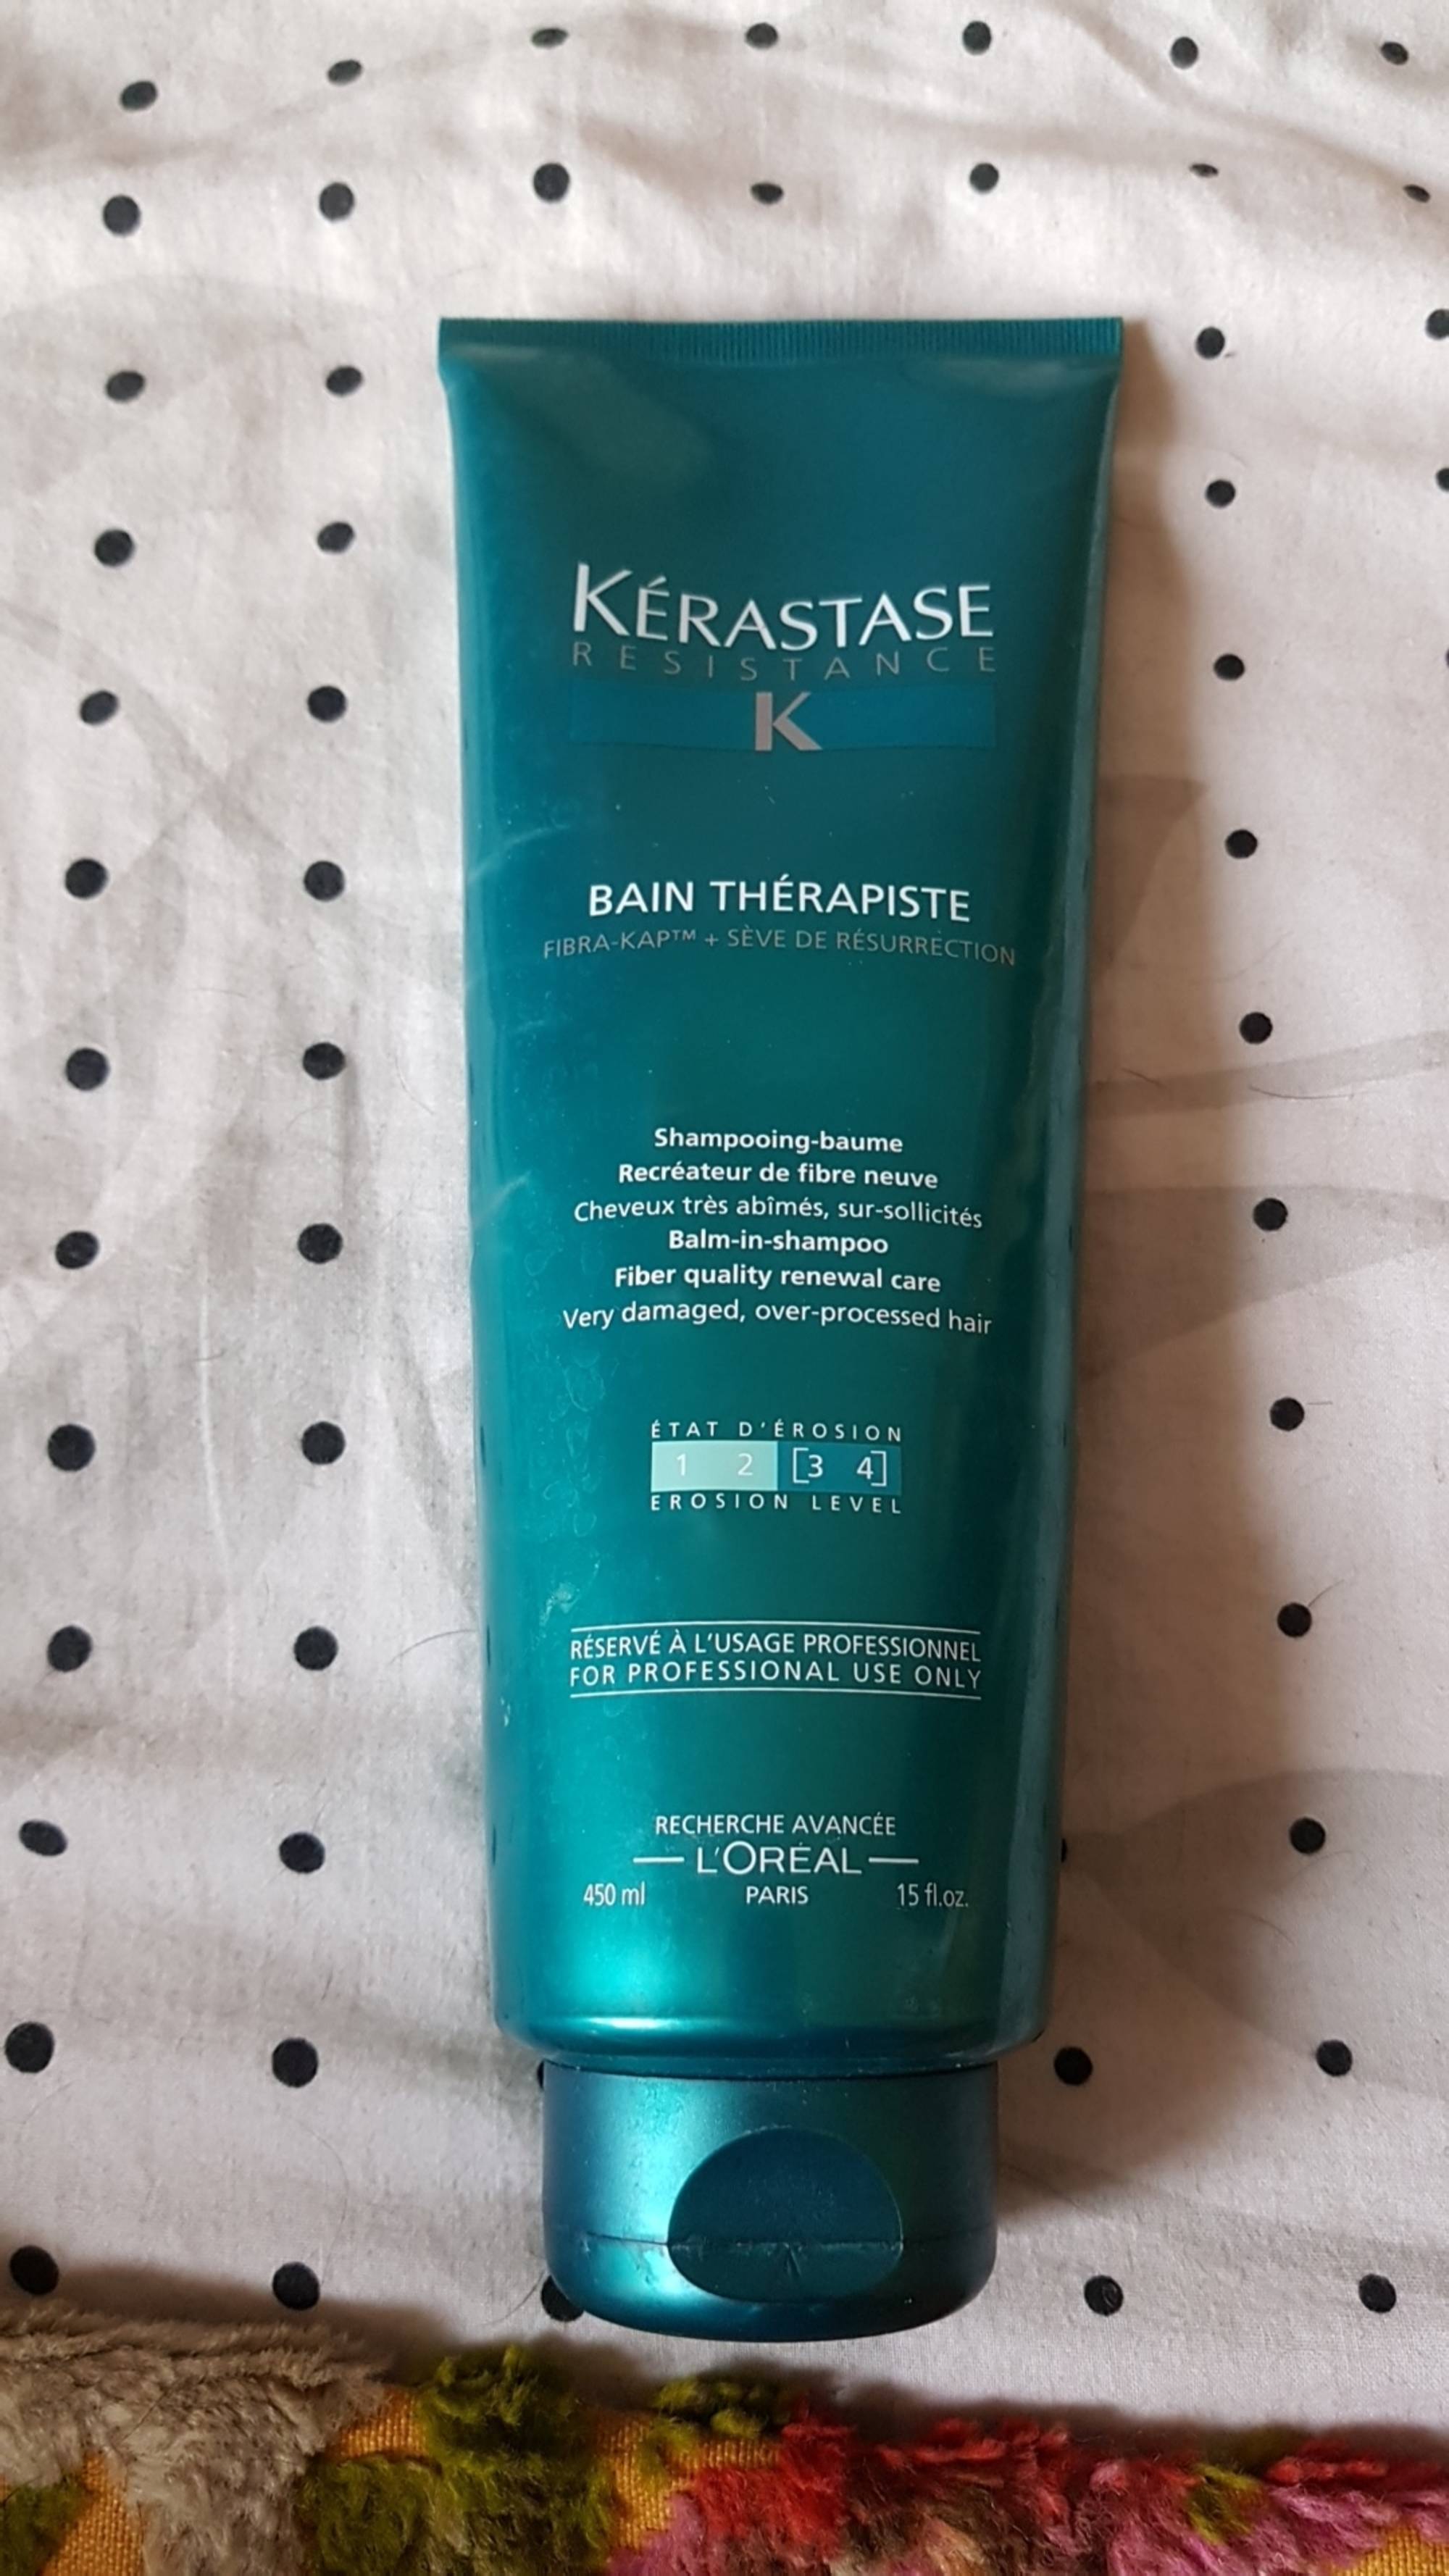 KÉRASTASE -  Résistance bain thérapiste - Shampooing-baume